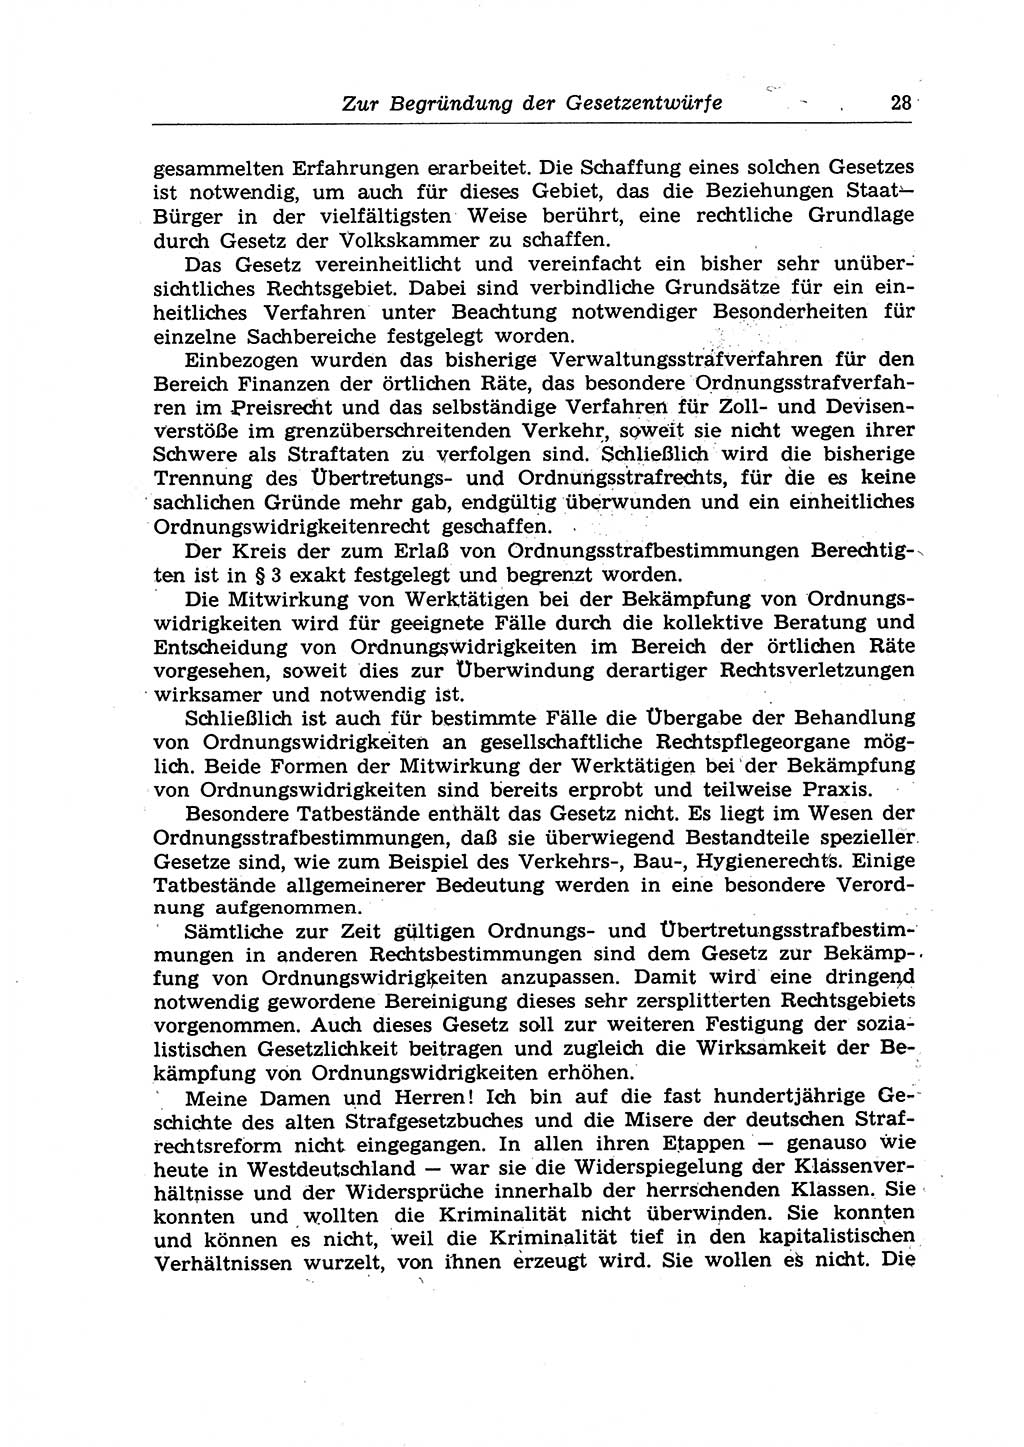 Strafrecht der Deutschen Demokratischen Republik (DDR), Lehrkommentar zum Strafgesetzbuch (StGB), Allgemeiner Teil 1970, Seite 28 (Strafr. DDR Lehrkomm. StGB AT 1970, S. 28)